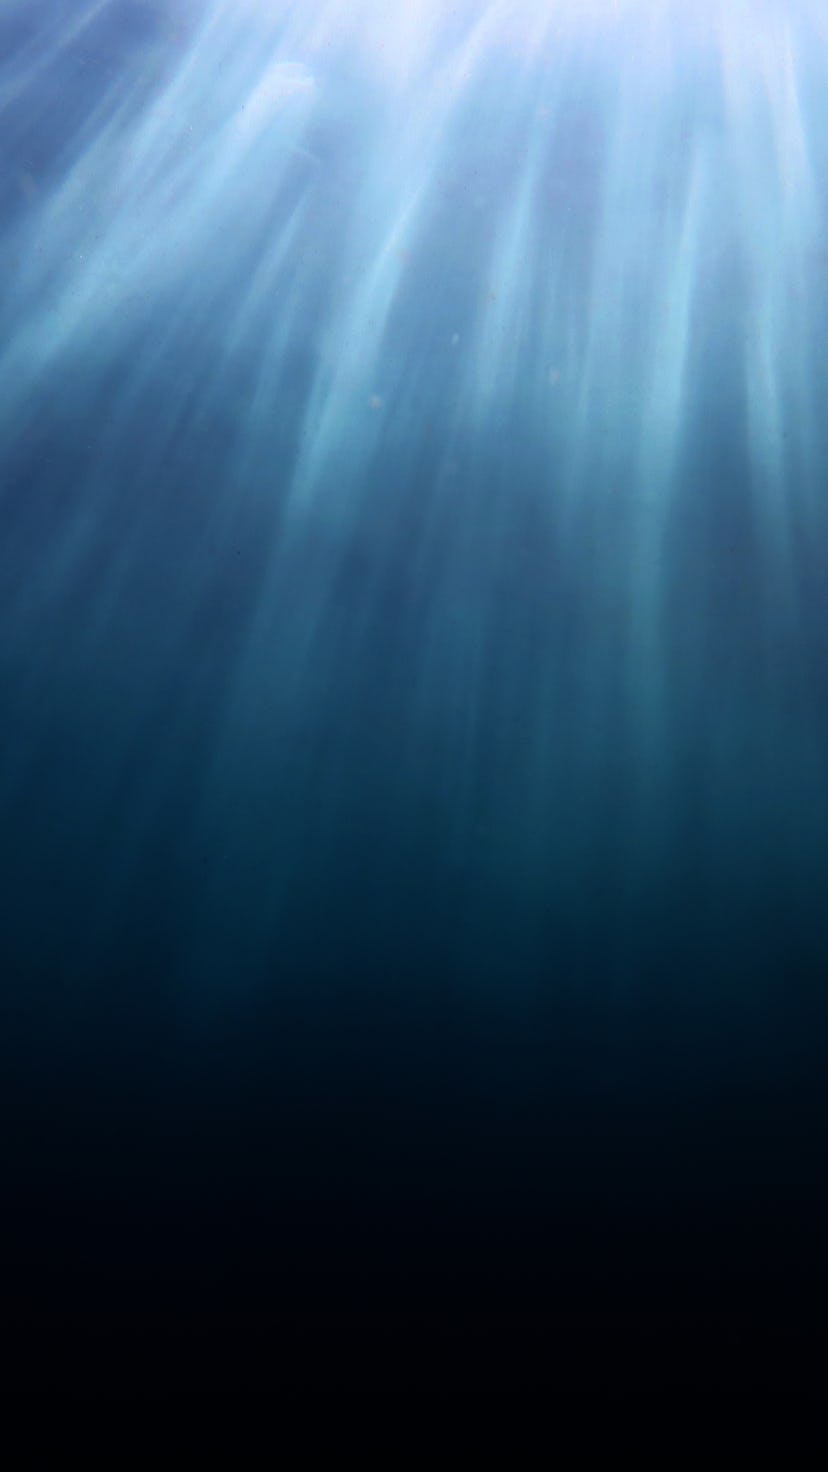 Aqua Menthe underwater surface sunlight shot sunlight shafts reaching to dark depths